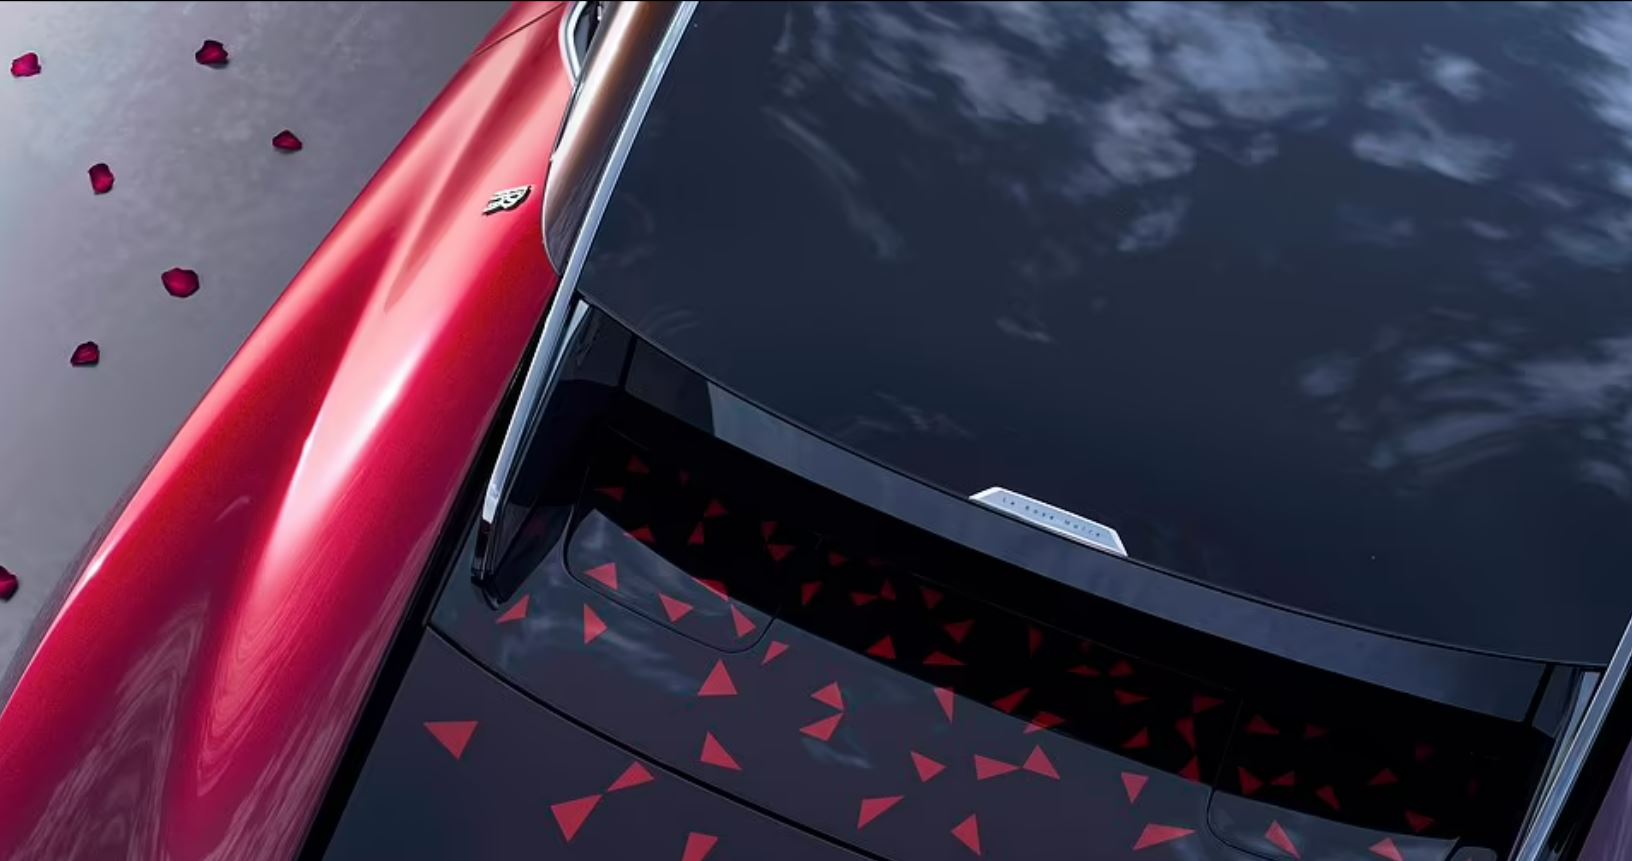 Das rot-schwarze Äußere des Autos passt zu den Blütenblättern der Blume und soll Romantik symbolisieren